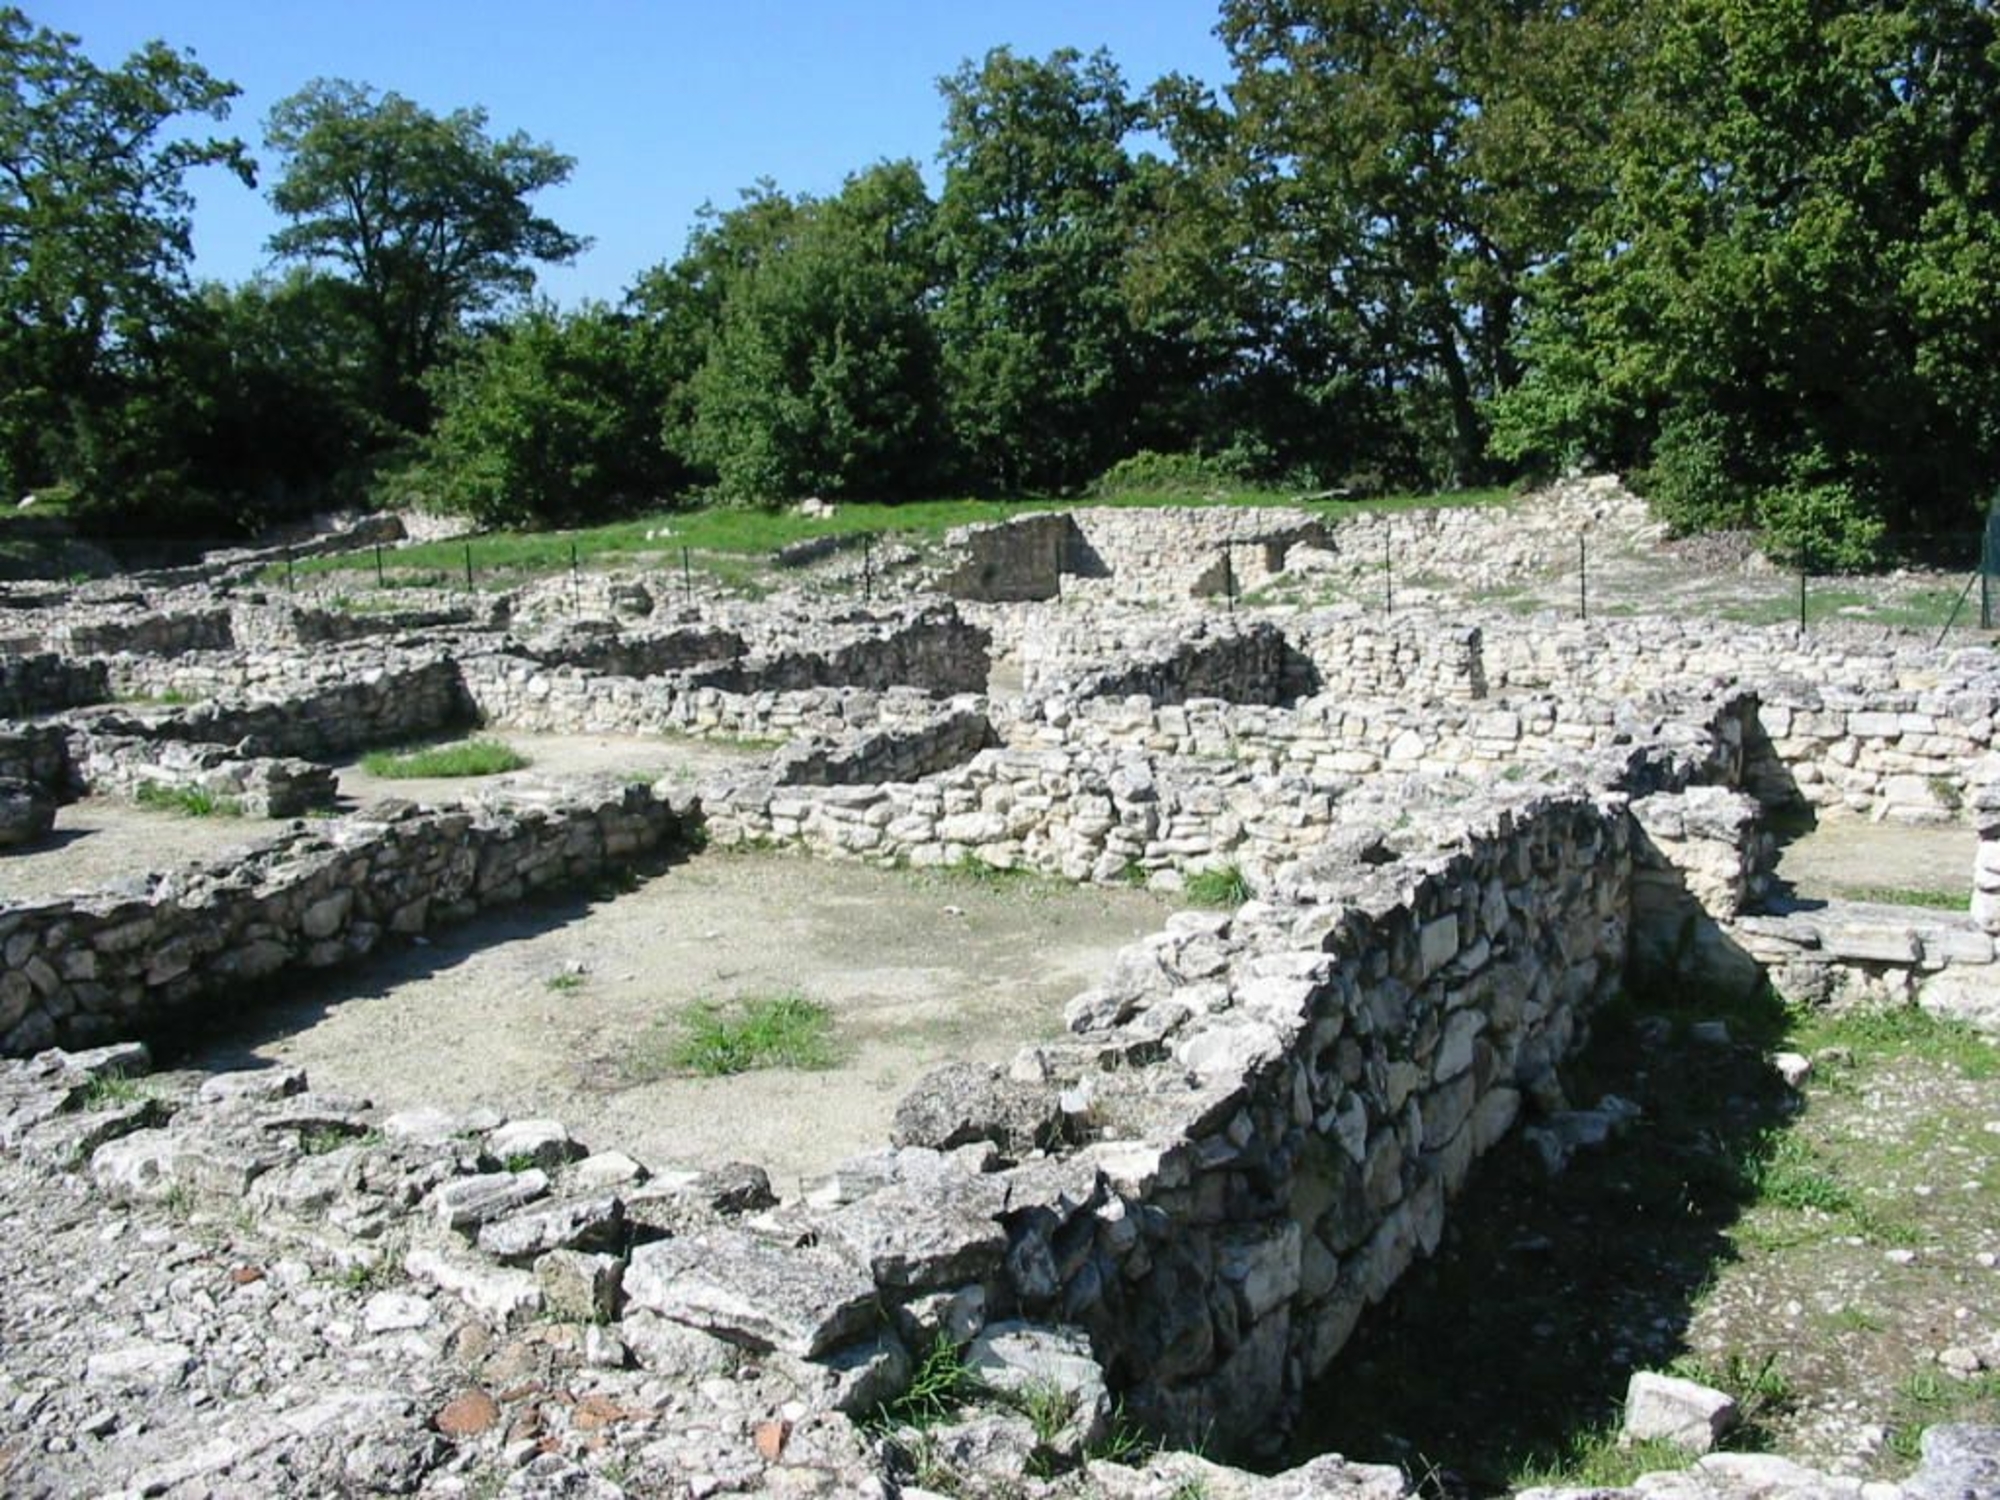 Vue générale de l'oppidum d'Entremont, au nord d'Aix-en-Provence, France, septembre 2002. Auteur: Malost. CC BY-SA 3.0.